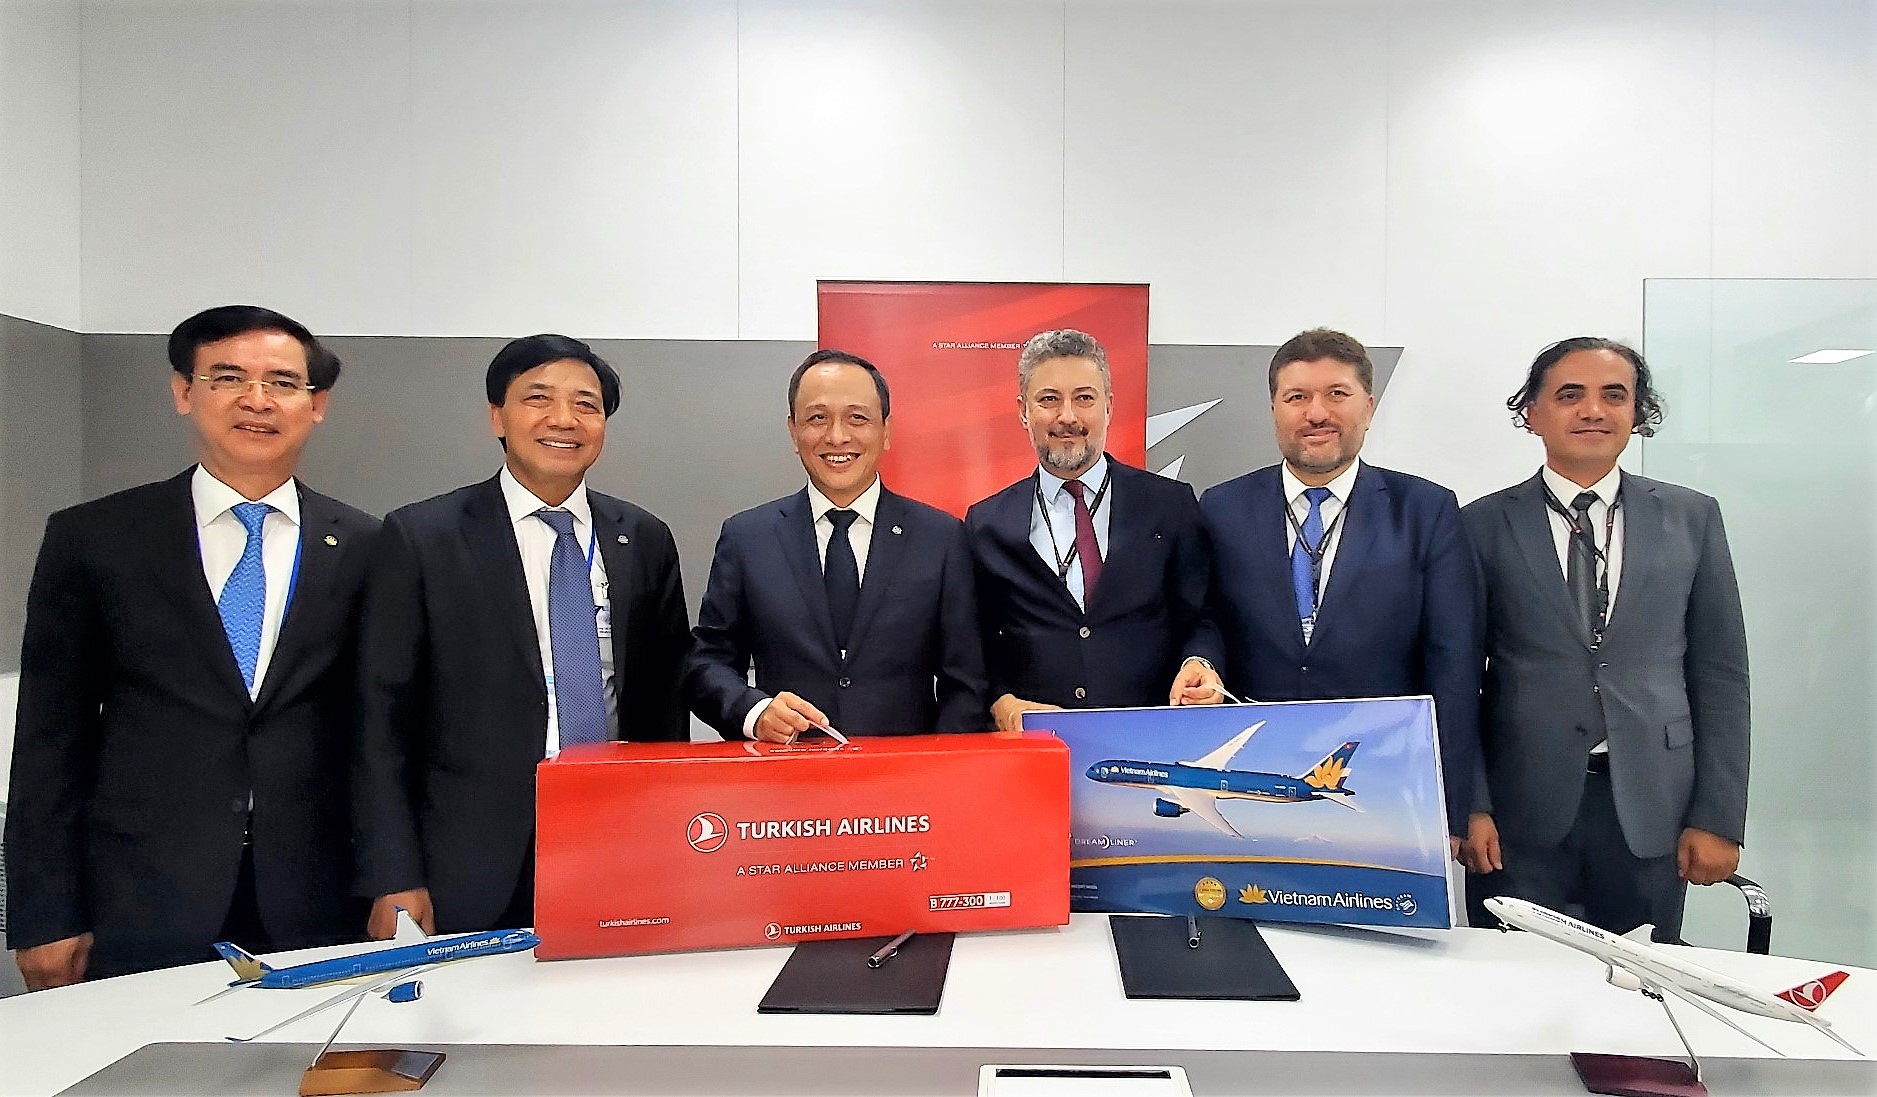 1 - Không chỉ tăng cường kết nối hàng không, hợp tác góp phần phát triển quan hệ giao lưu kinh tế, văn hóa, xã hội giữa Việt Nam với Thổ Nhĩ Kỳ và các khu vực châu Âu, Trung Đông